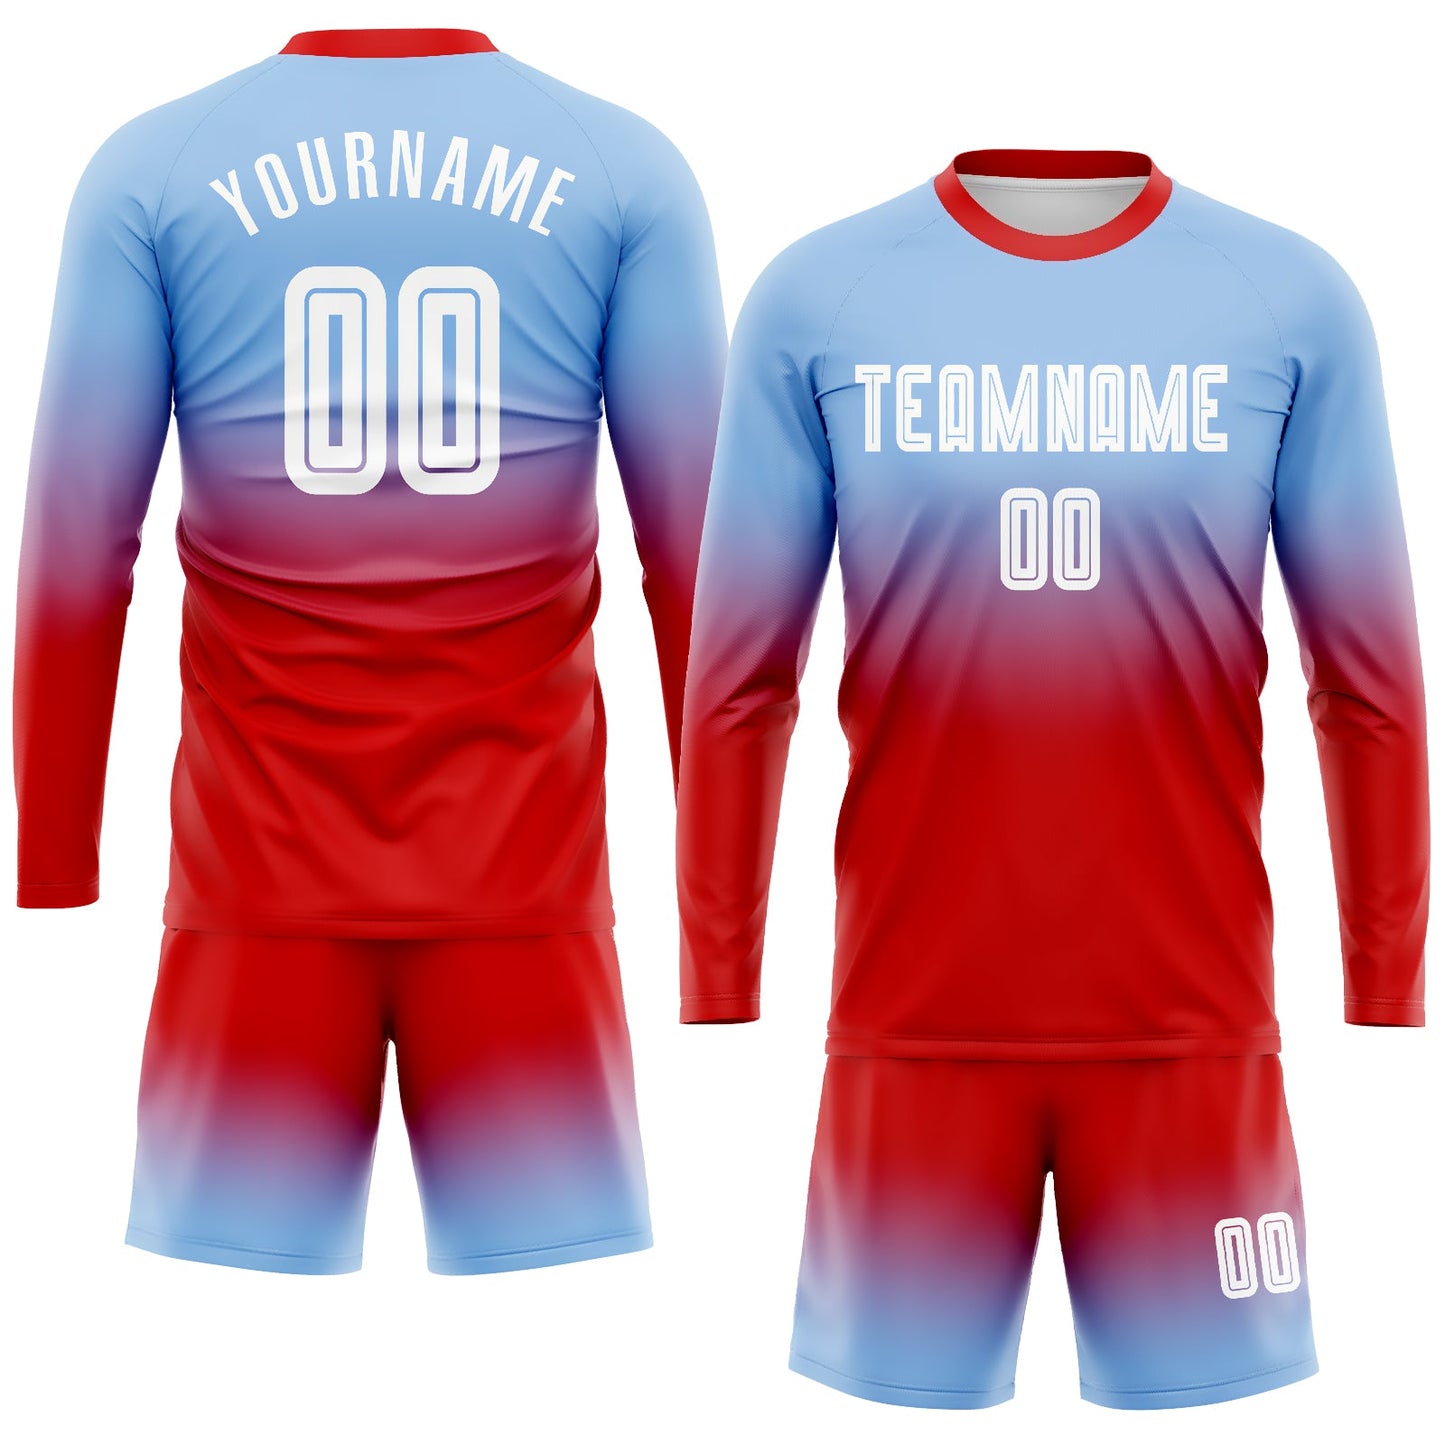 Maillot d'uniforme de football à manches longues, bleu clair, blanc et rouge, personnalisé, à la mode, fondu, par Sublimation